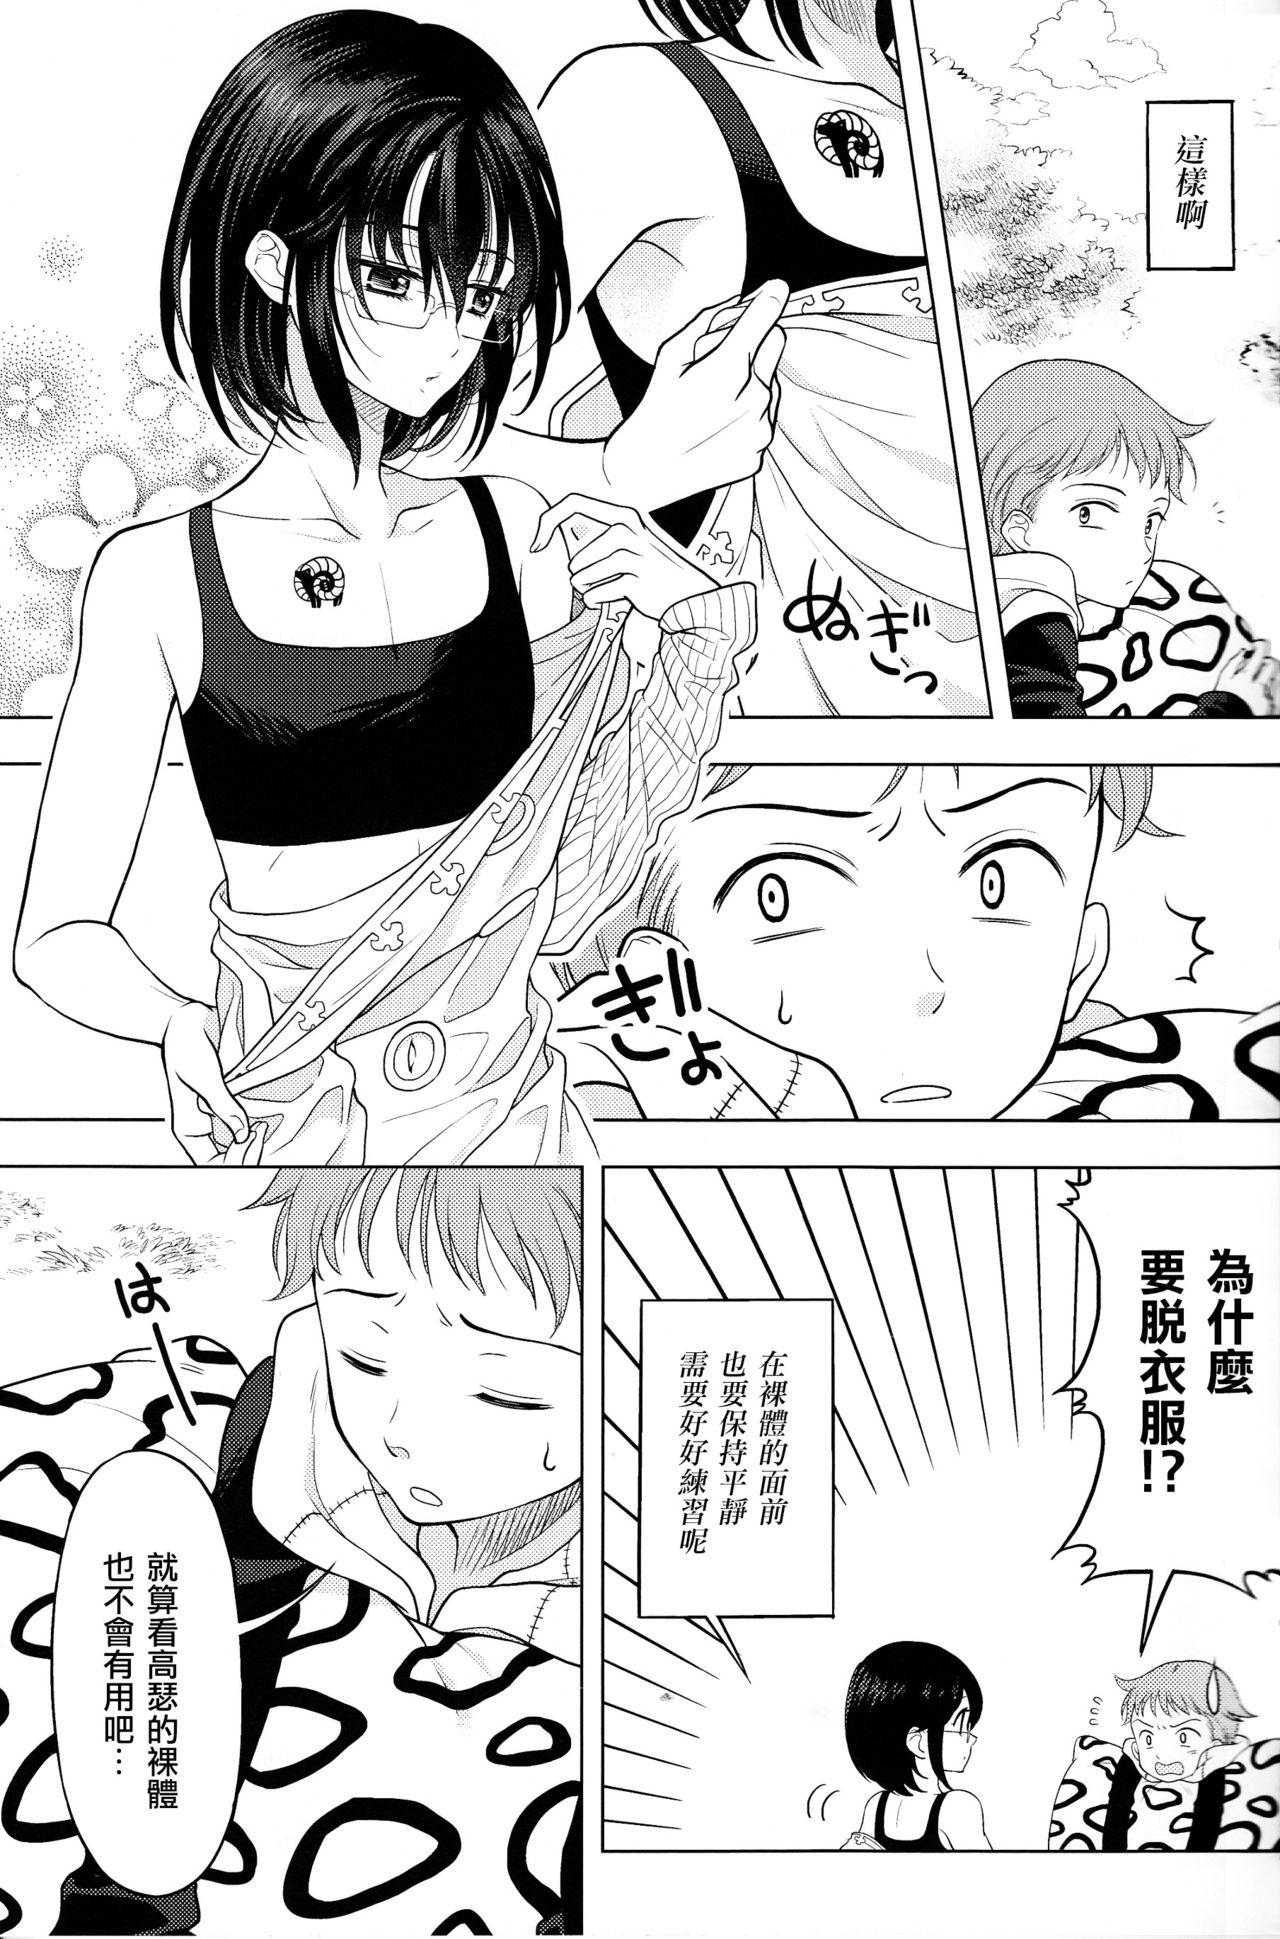 Extreme Shikiyoku, tsumibukashi - Lust is sinful - Nanatsu no taizai Best Blowjob - Page 6